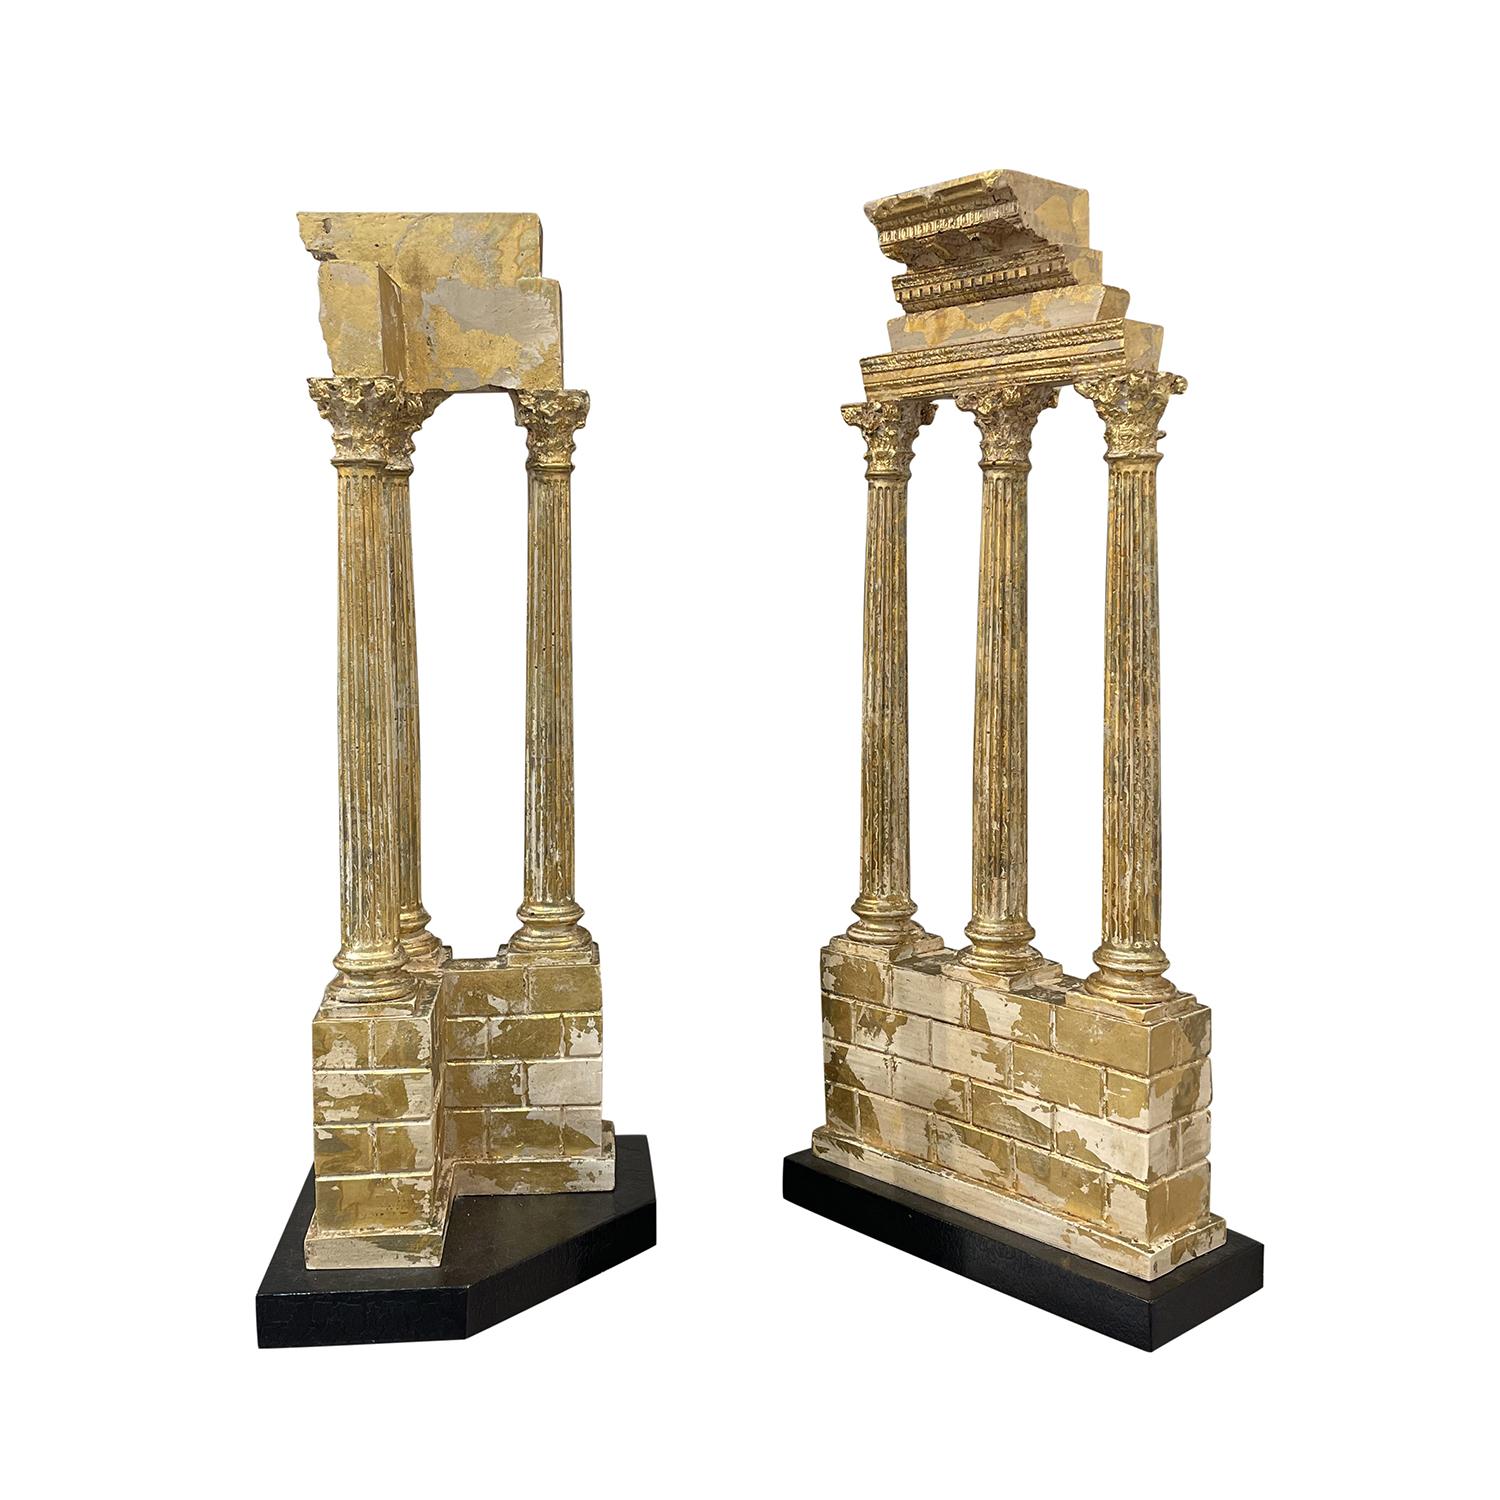 Un ensemble italien ancien de modèles Grand Tour, fragments du temple de Castor et Pollux en pierre dorée travaillée à la main, en bon état. Les colonnes détaillées reposent sur une base rectangulaire. Usure conforme à l'âge et à l'utilisation.